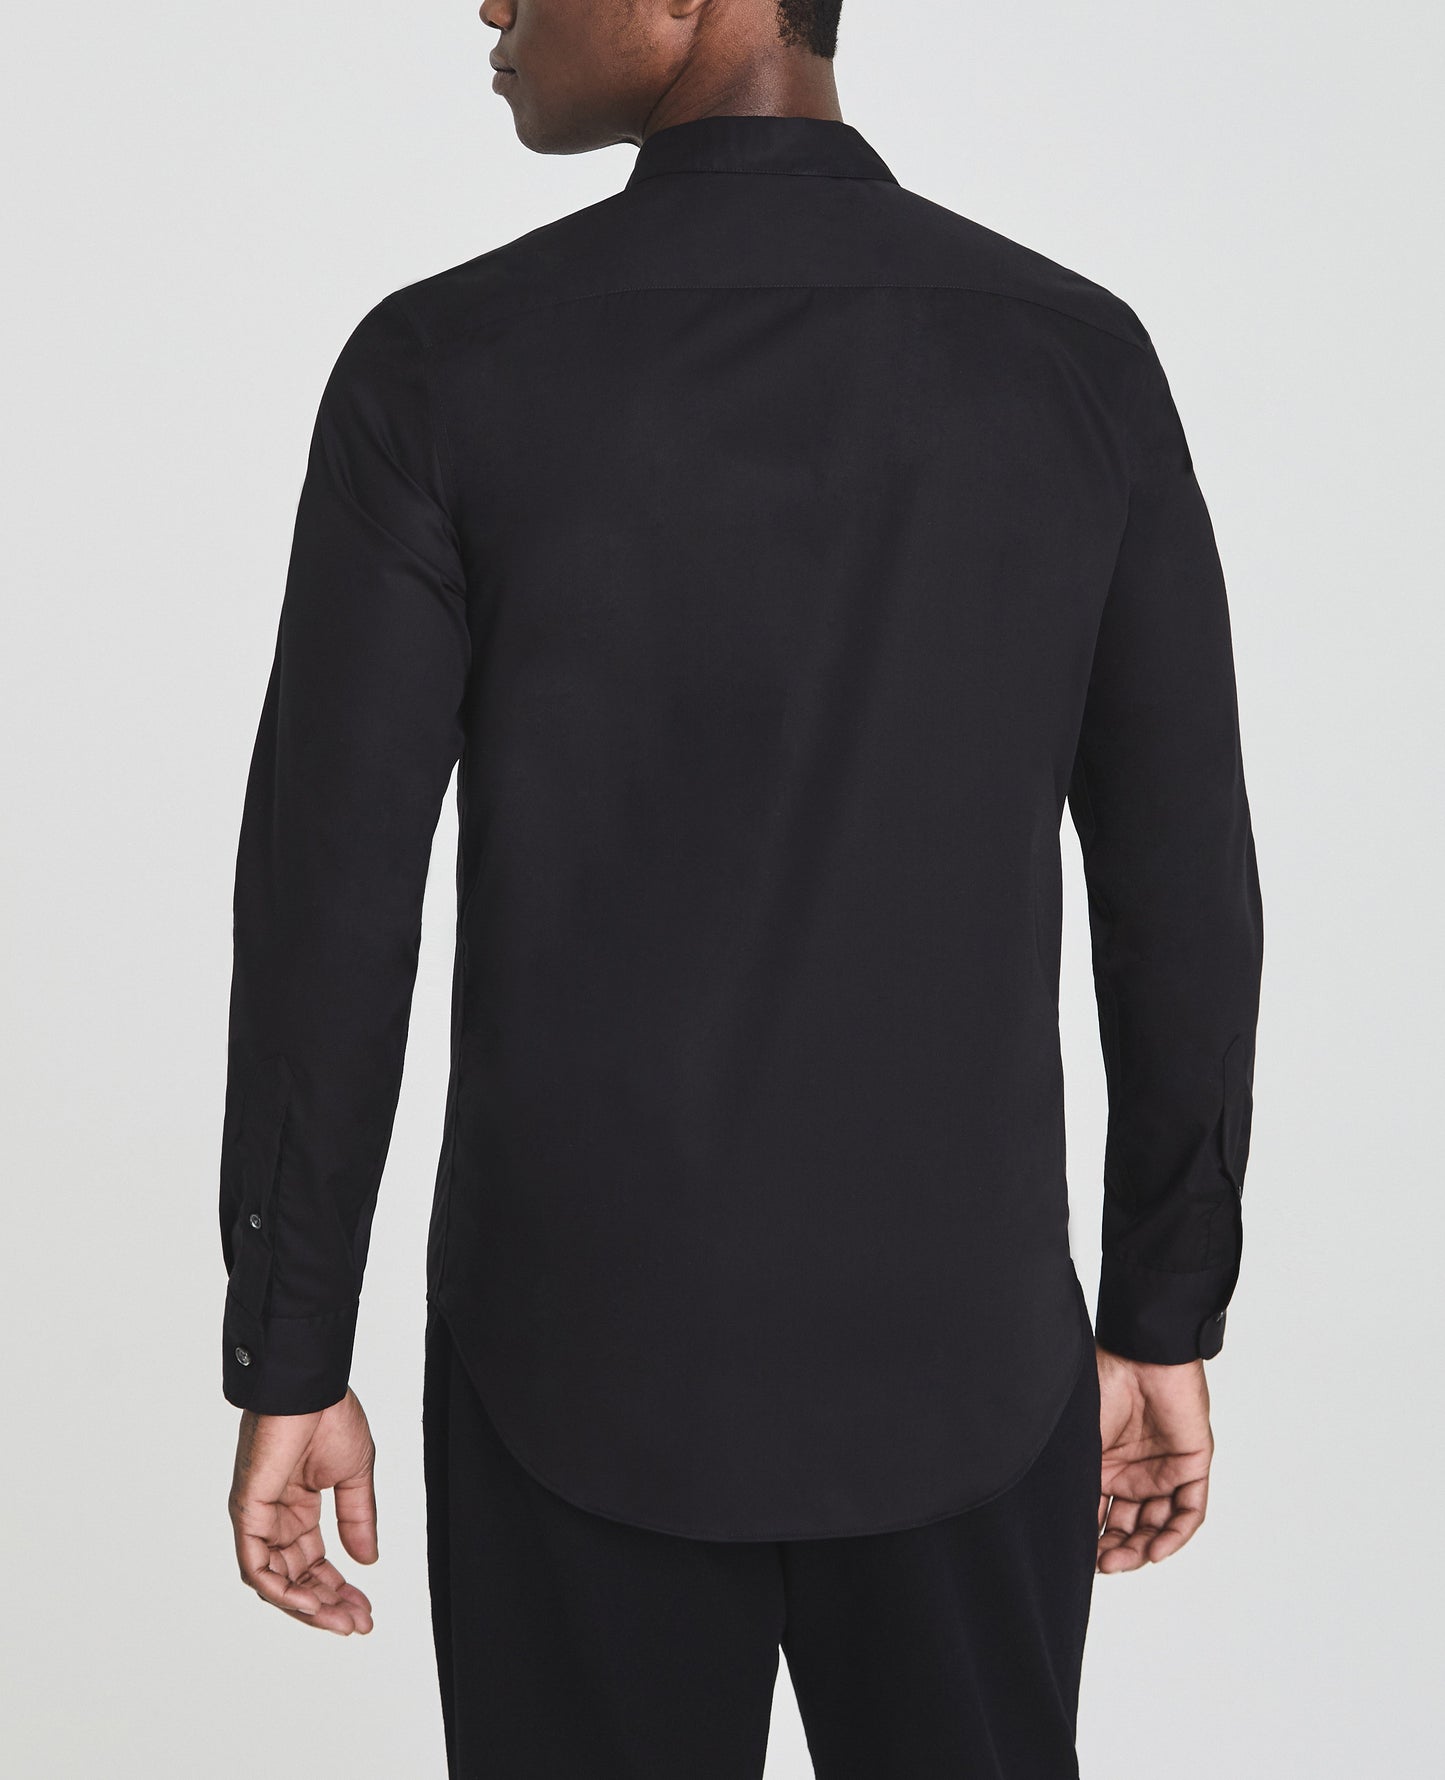 Ace Dress Shirt True Black Long Sleeve Shirt Men Tops Photo 3